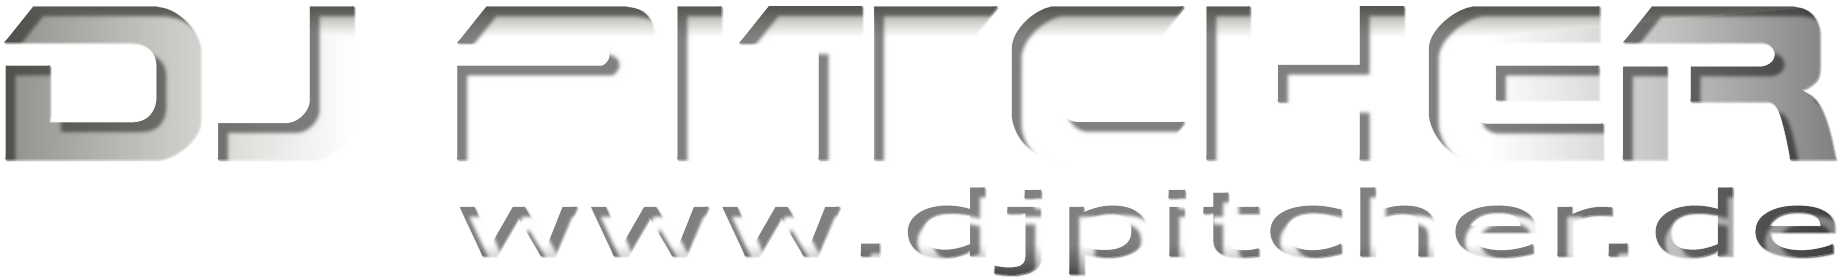 DJ Pitcher - Logo